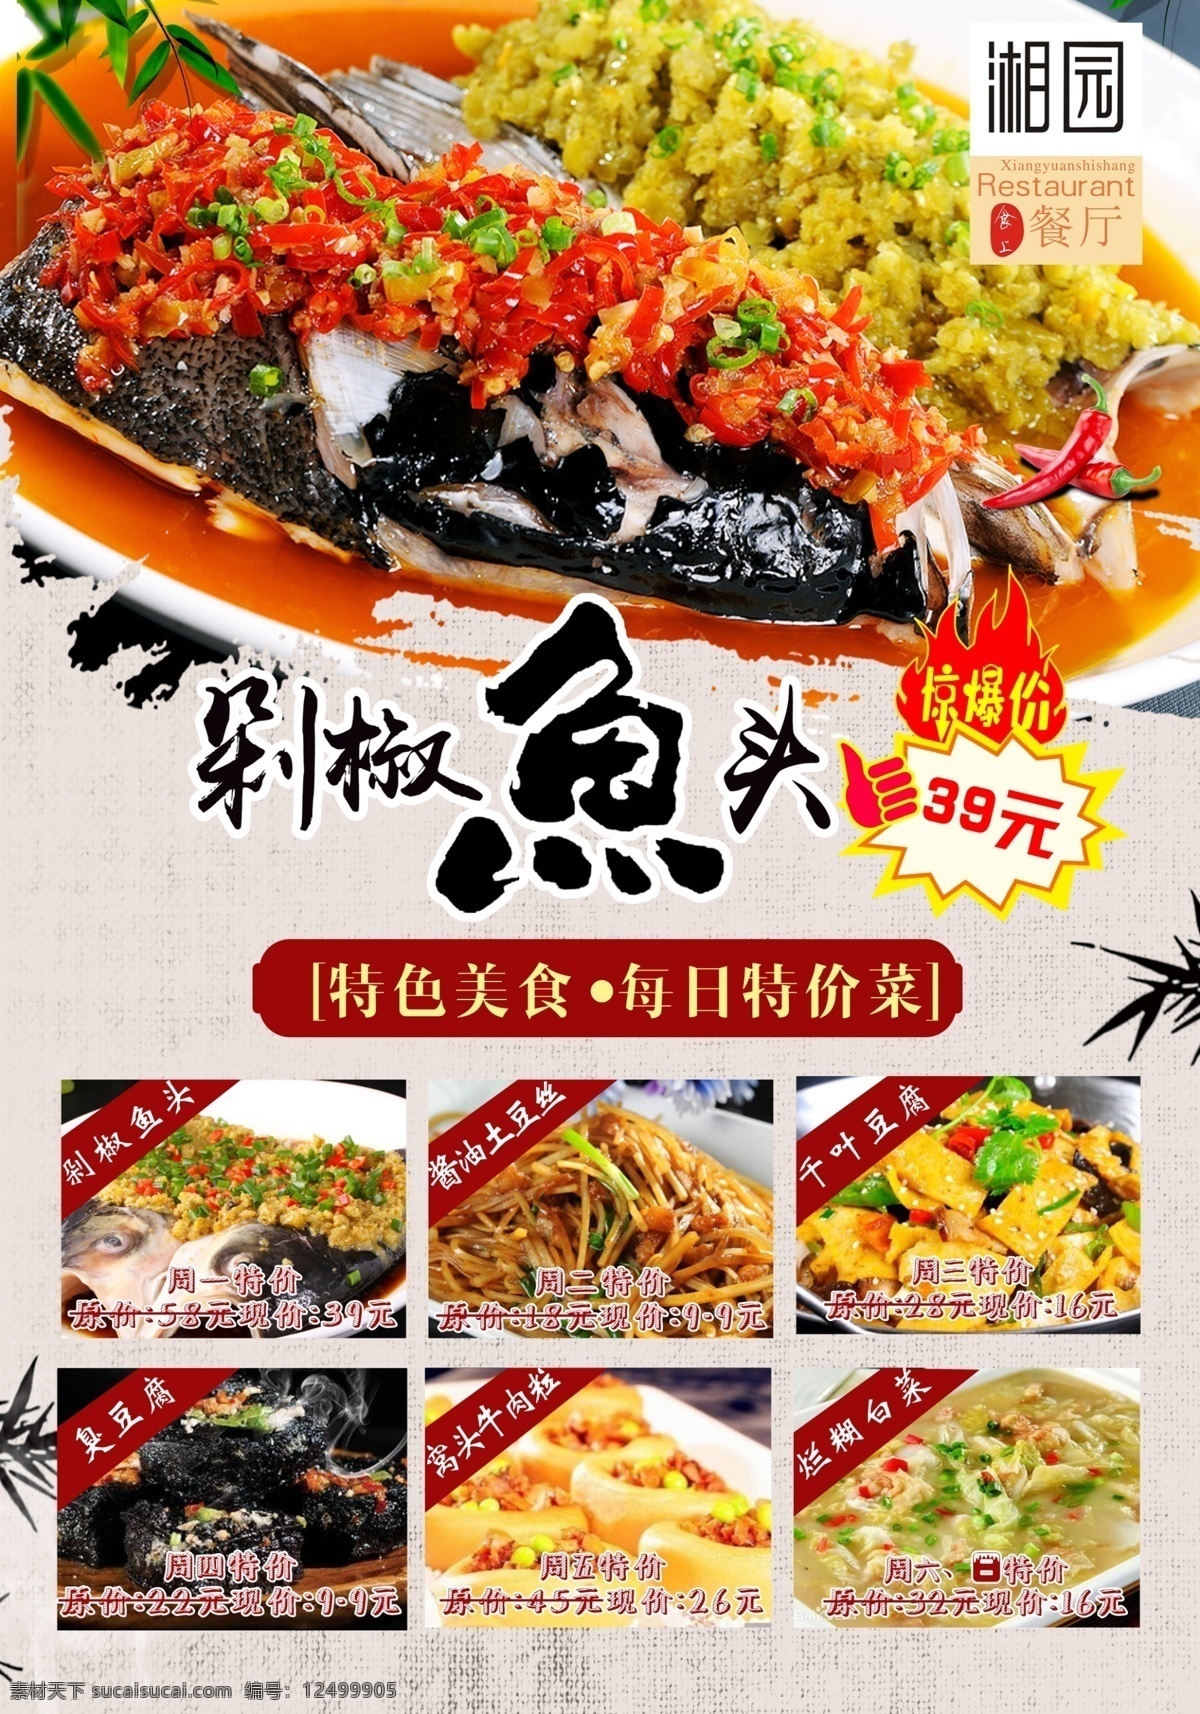 海报写真 特价菜 剁椒鱼头 海报 写真 菜品